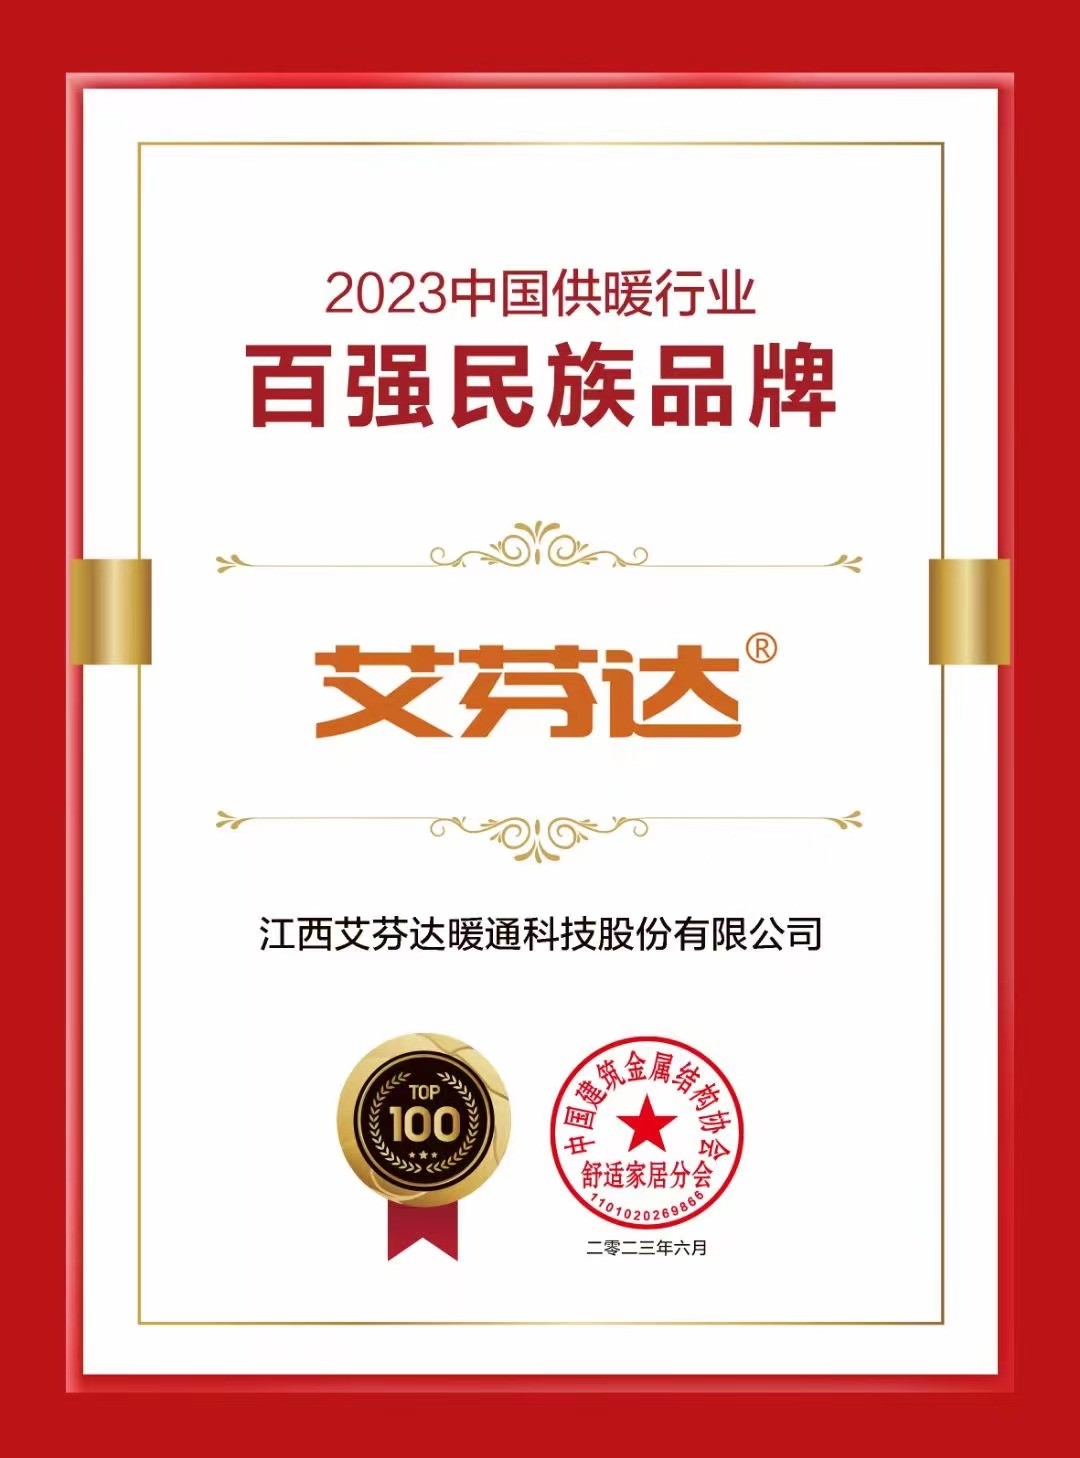 新澳门新葡萄娱乐2023中国供暖行业百强民族品牌揭晓艾芬达荣誉上榜